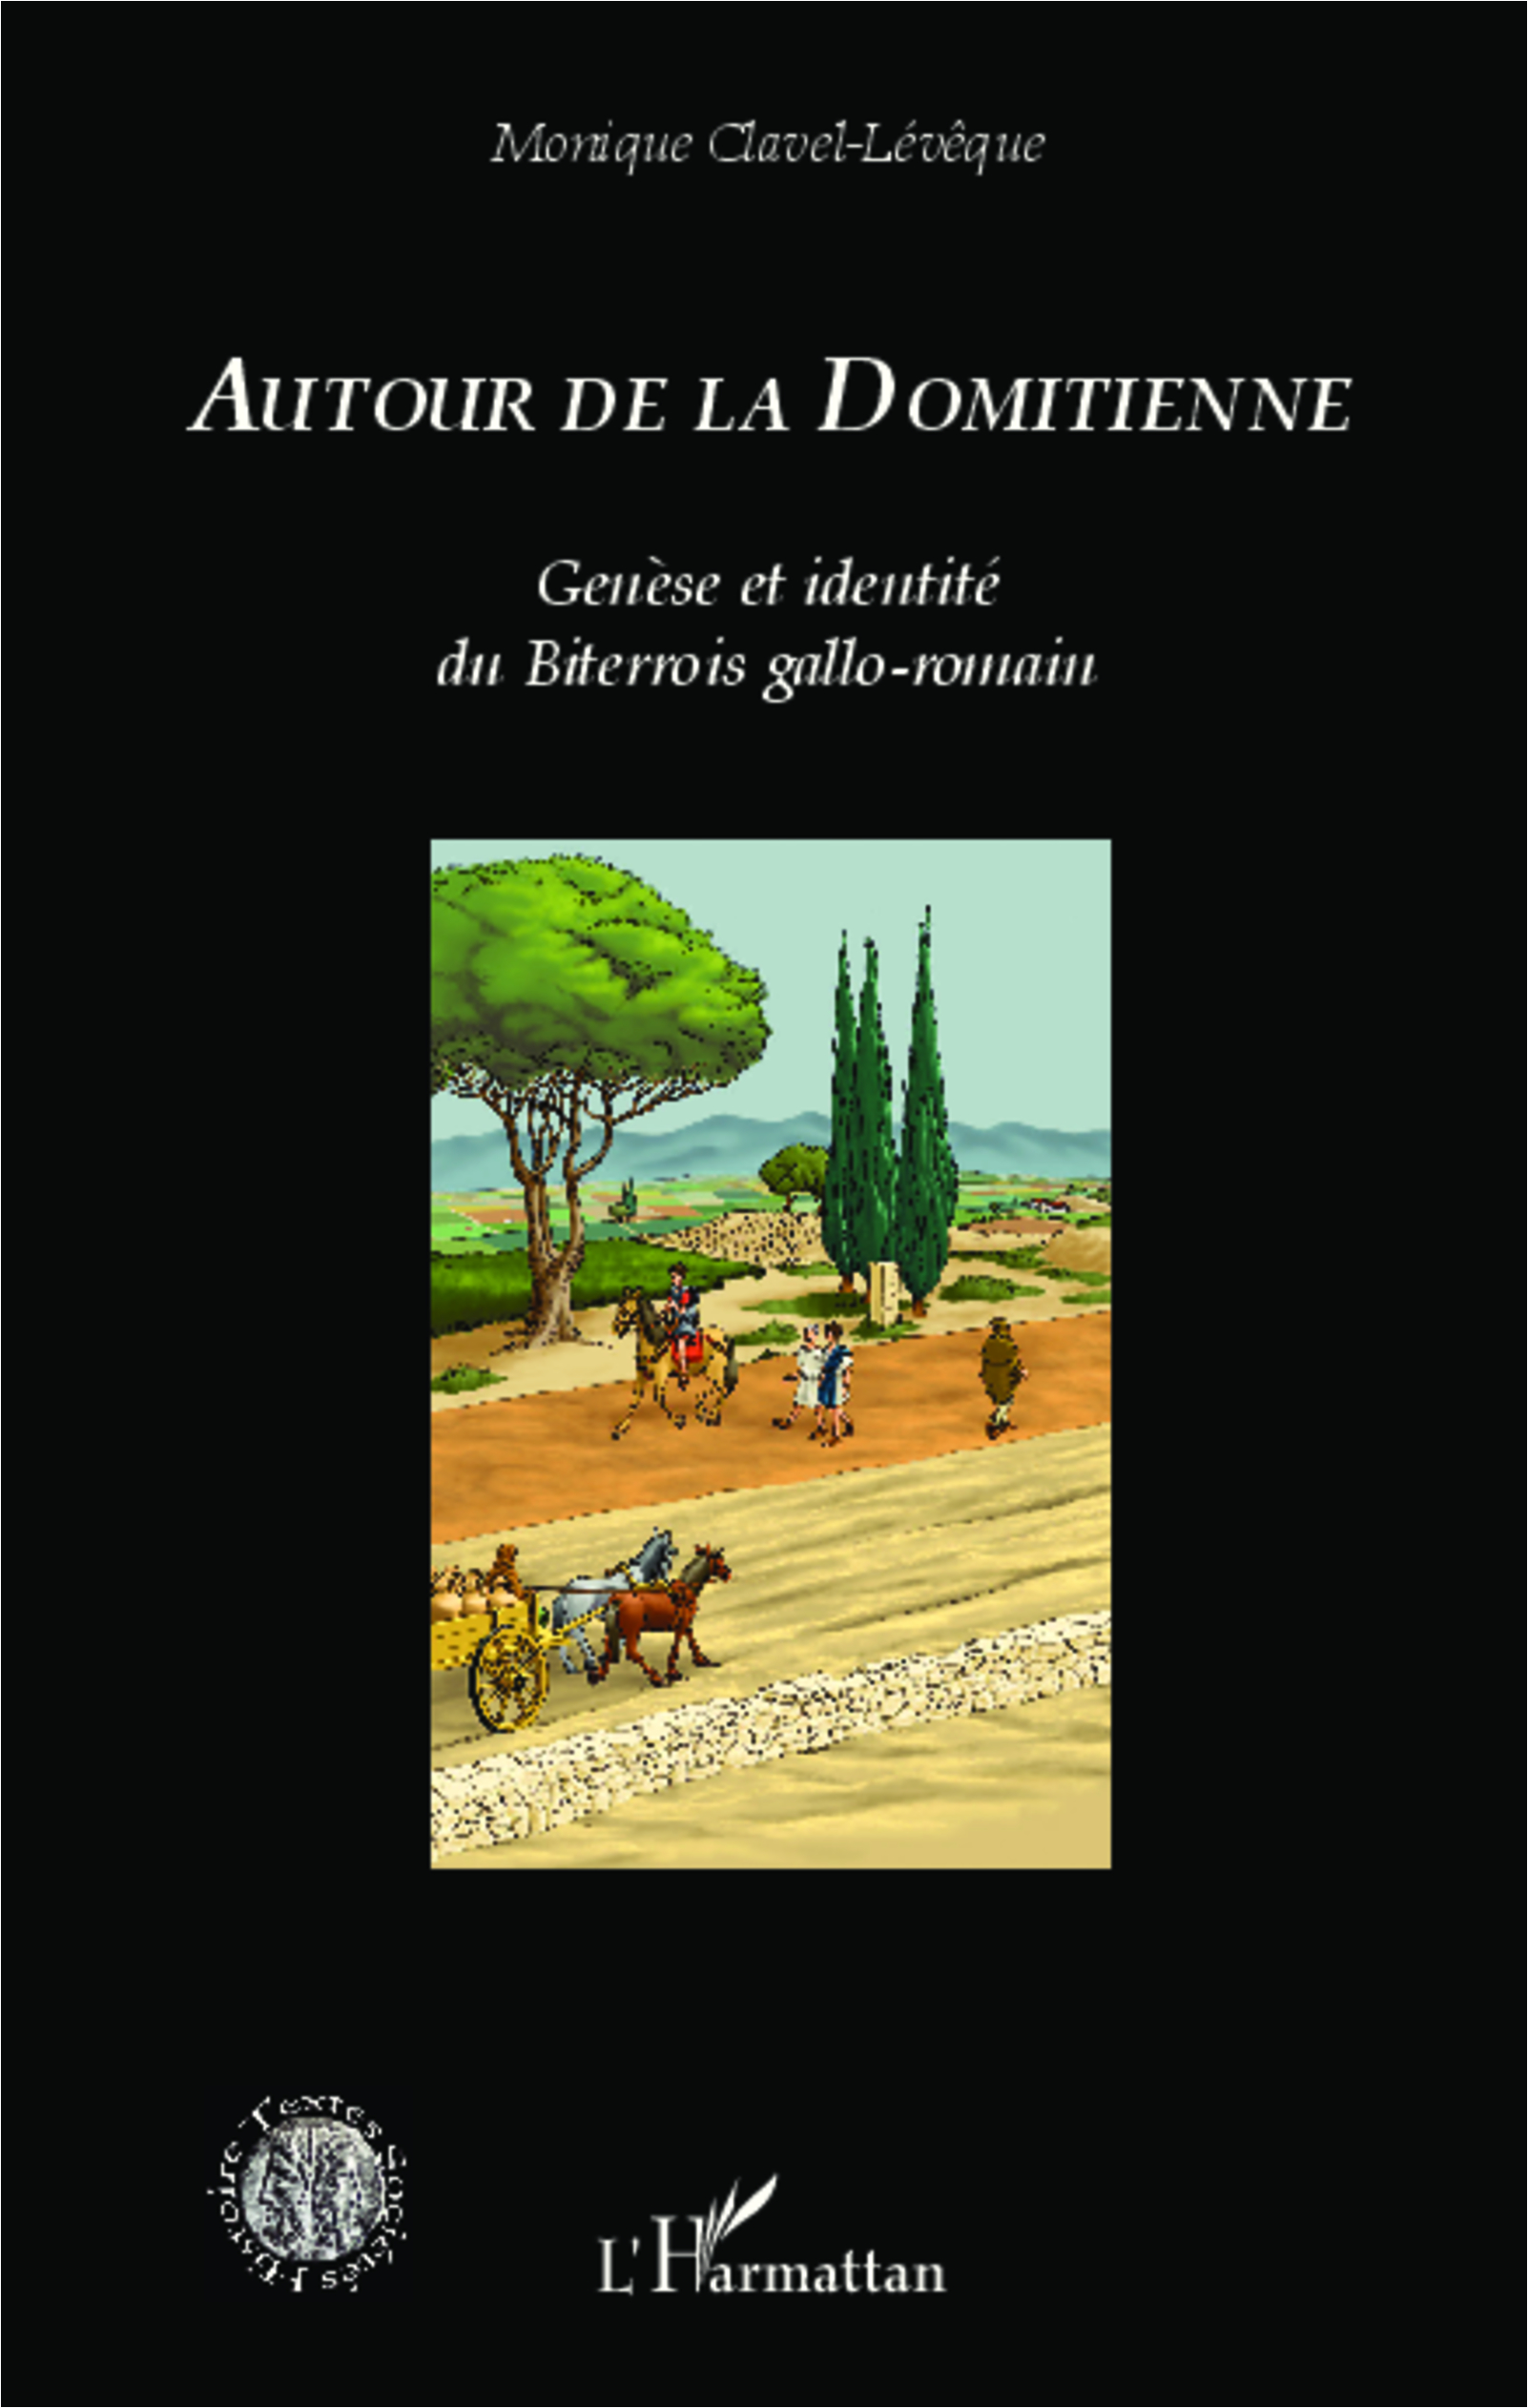 Autour de la Domitienne. Genèse et identité du Biterrois gallo-romain, 2014, 266 p.